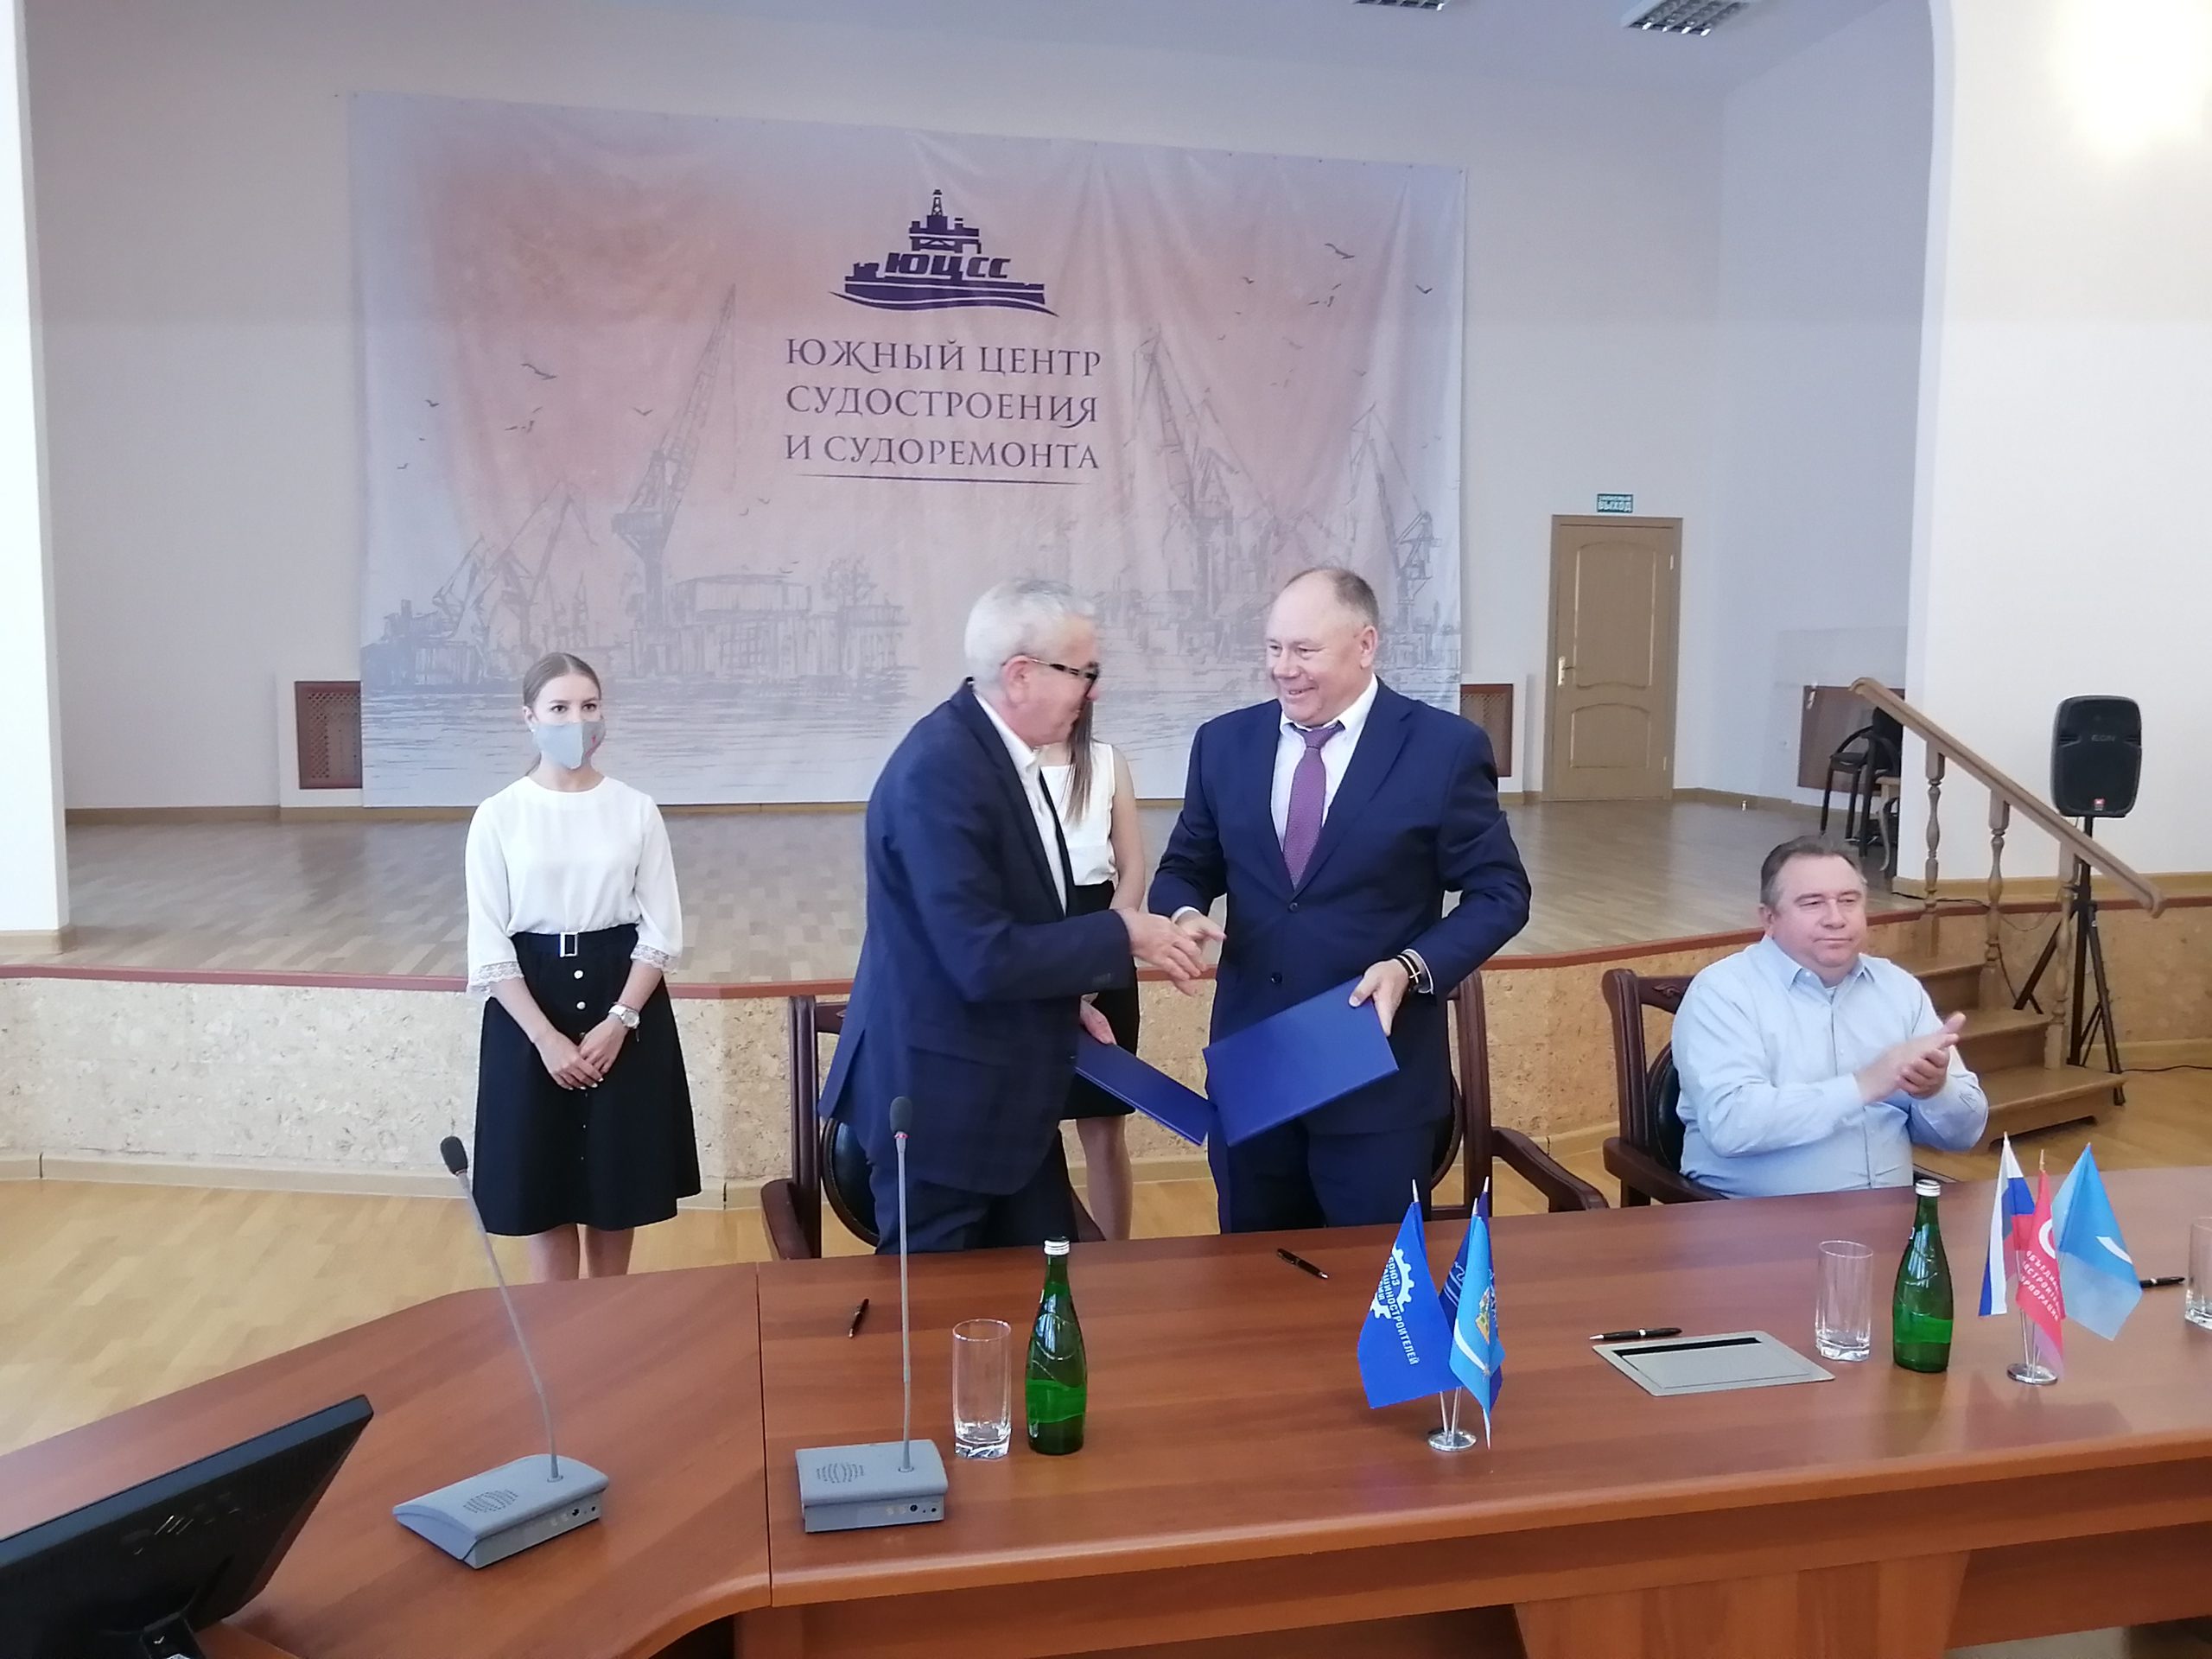 АГТУ и Союз машиностроителей России подписали договор о сотрудничестве